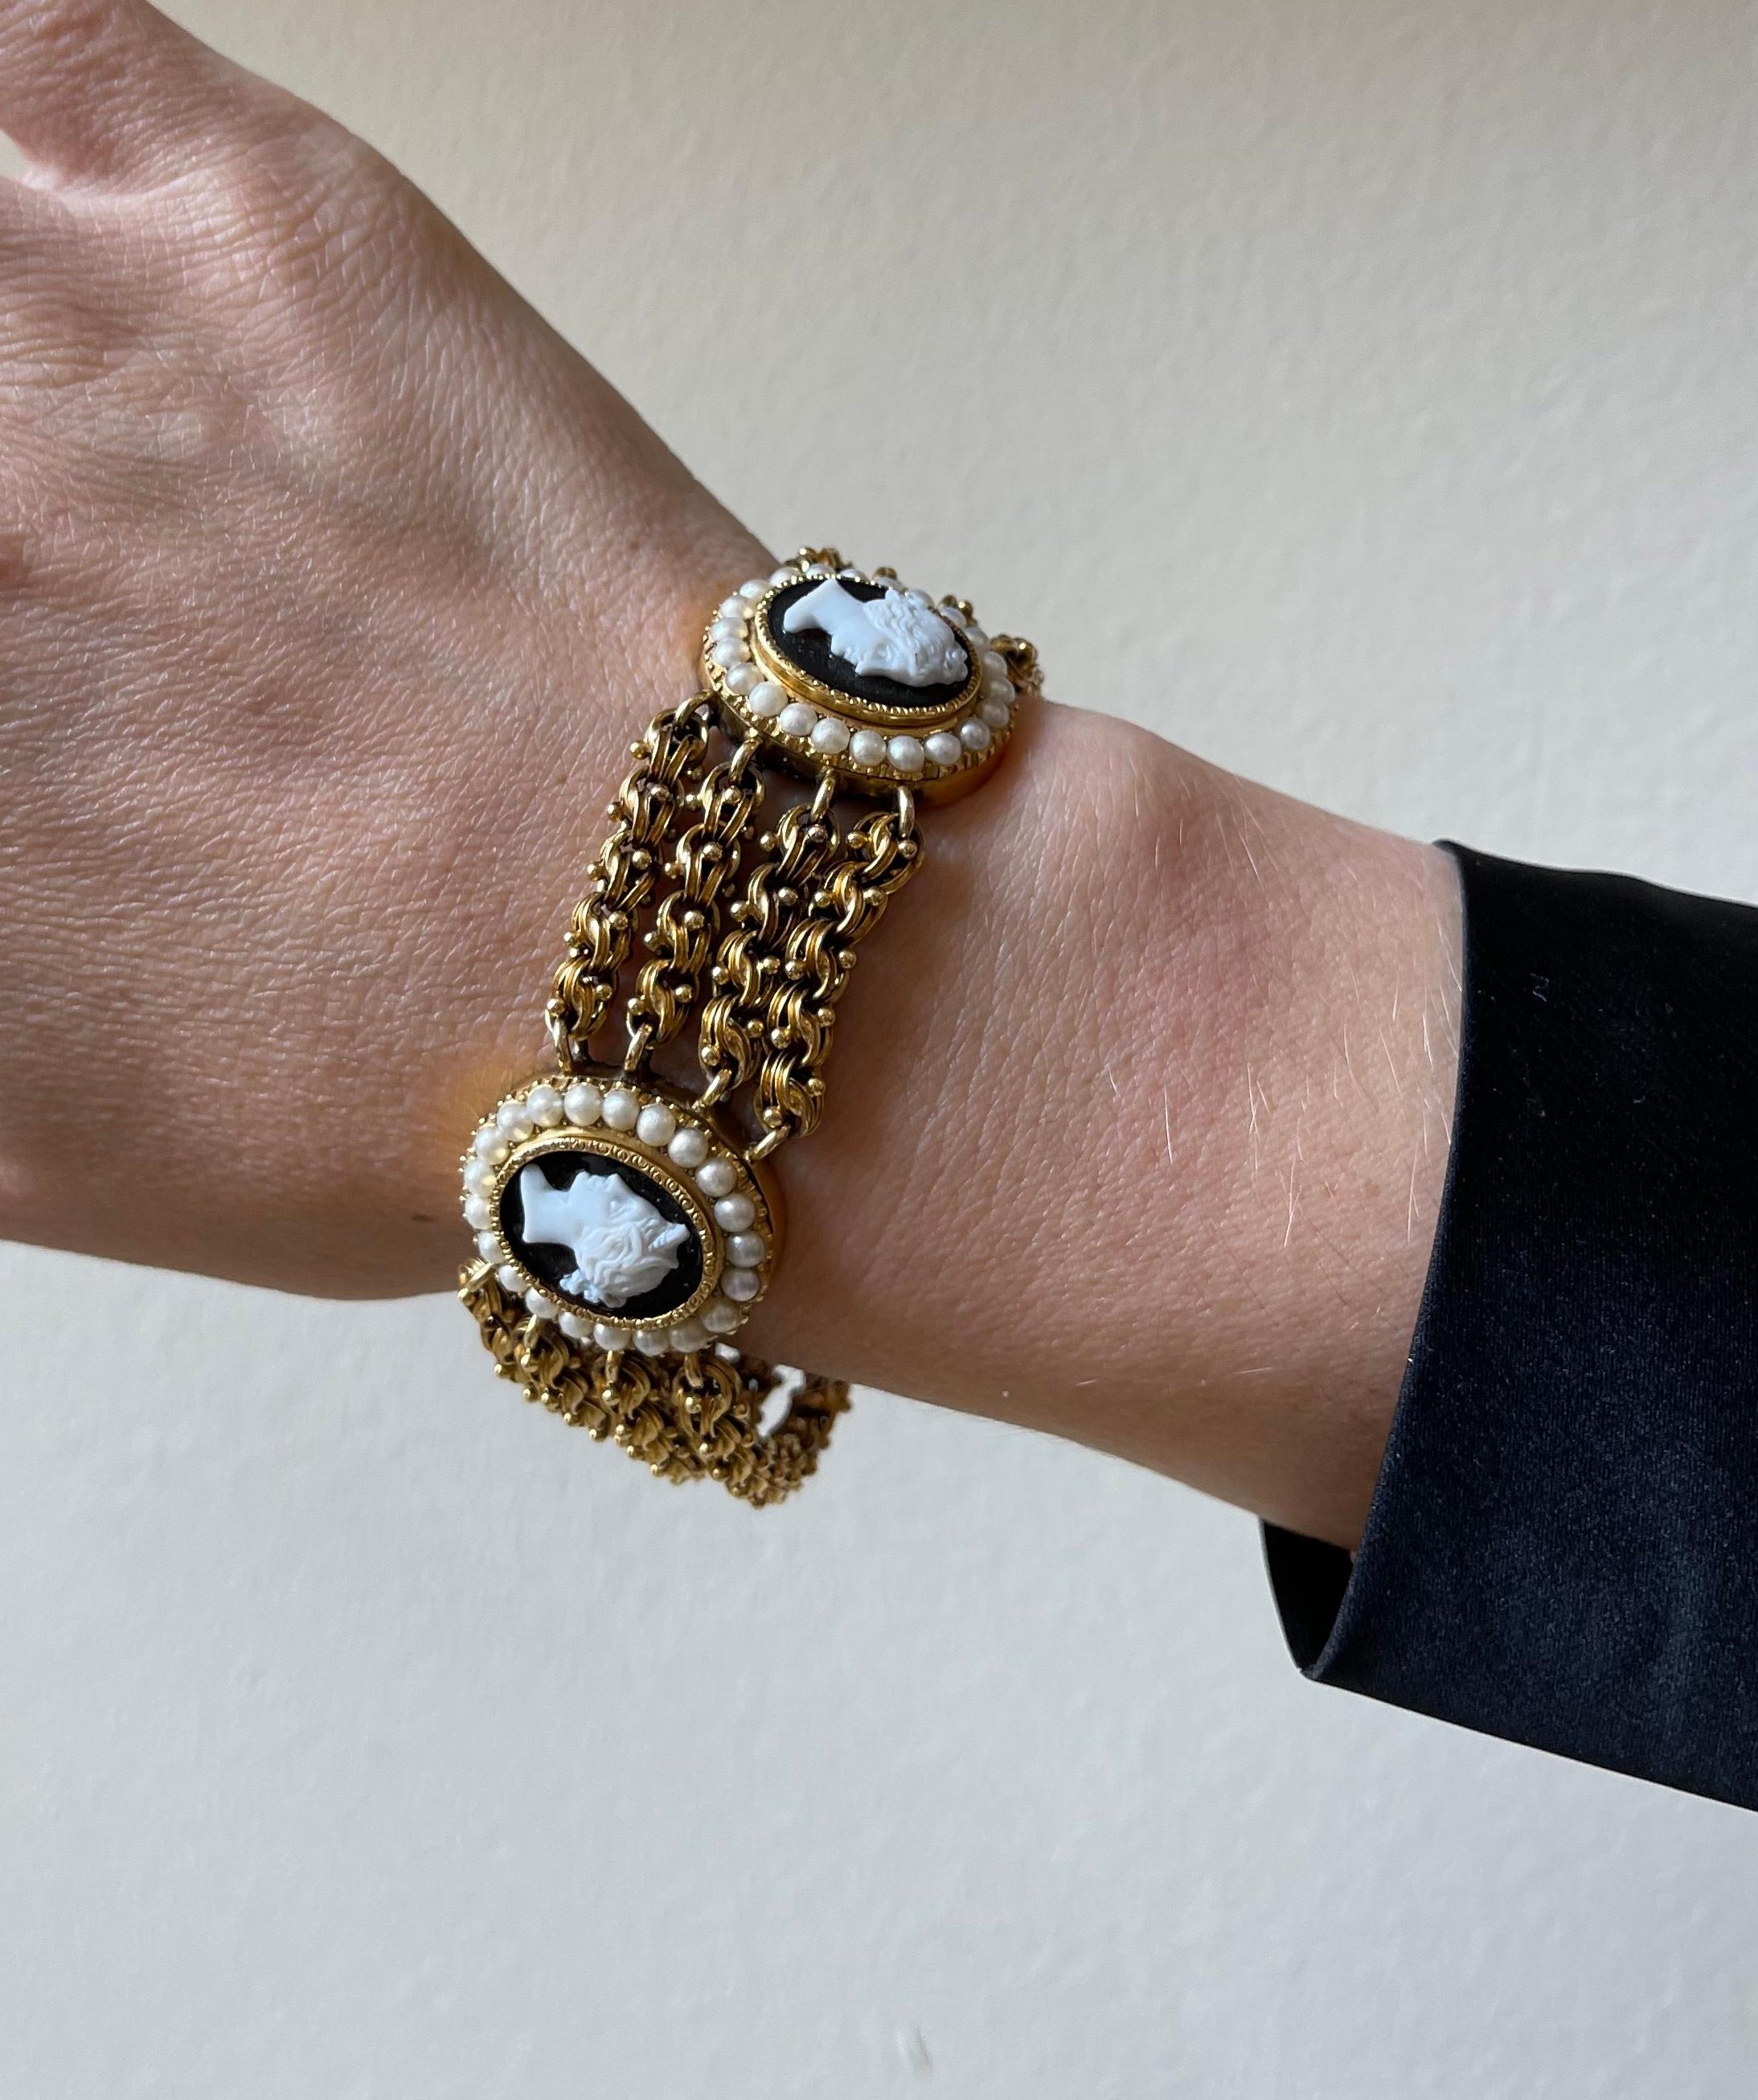 Antique bracelet victorien en or 14k à 4 rangs, présentant deux stations de camée en pierre dure, représentant le profil d'une dame, entouré de perles. Le bracelet mesure 7